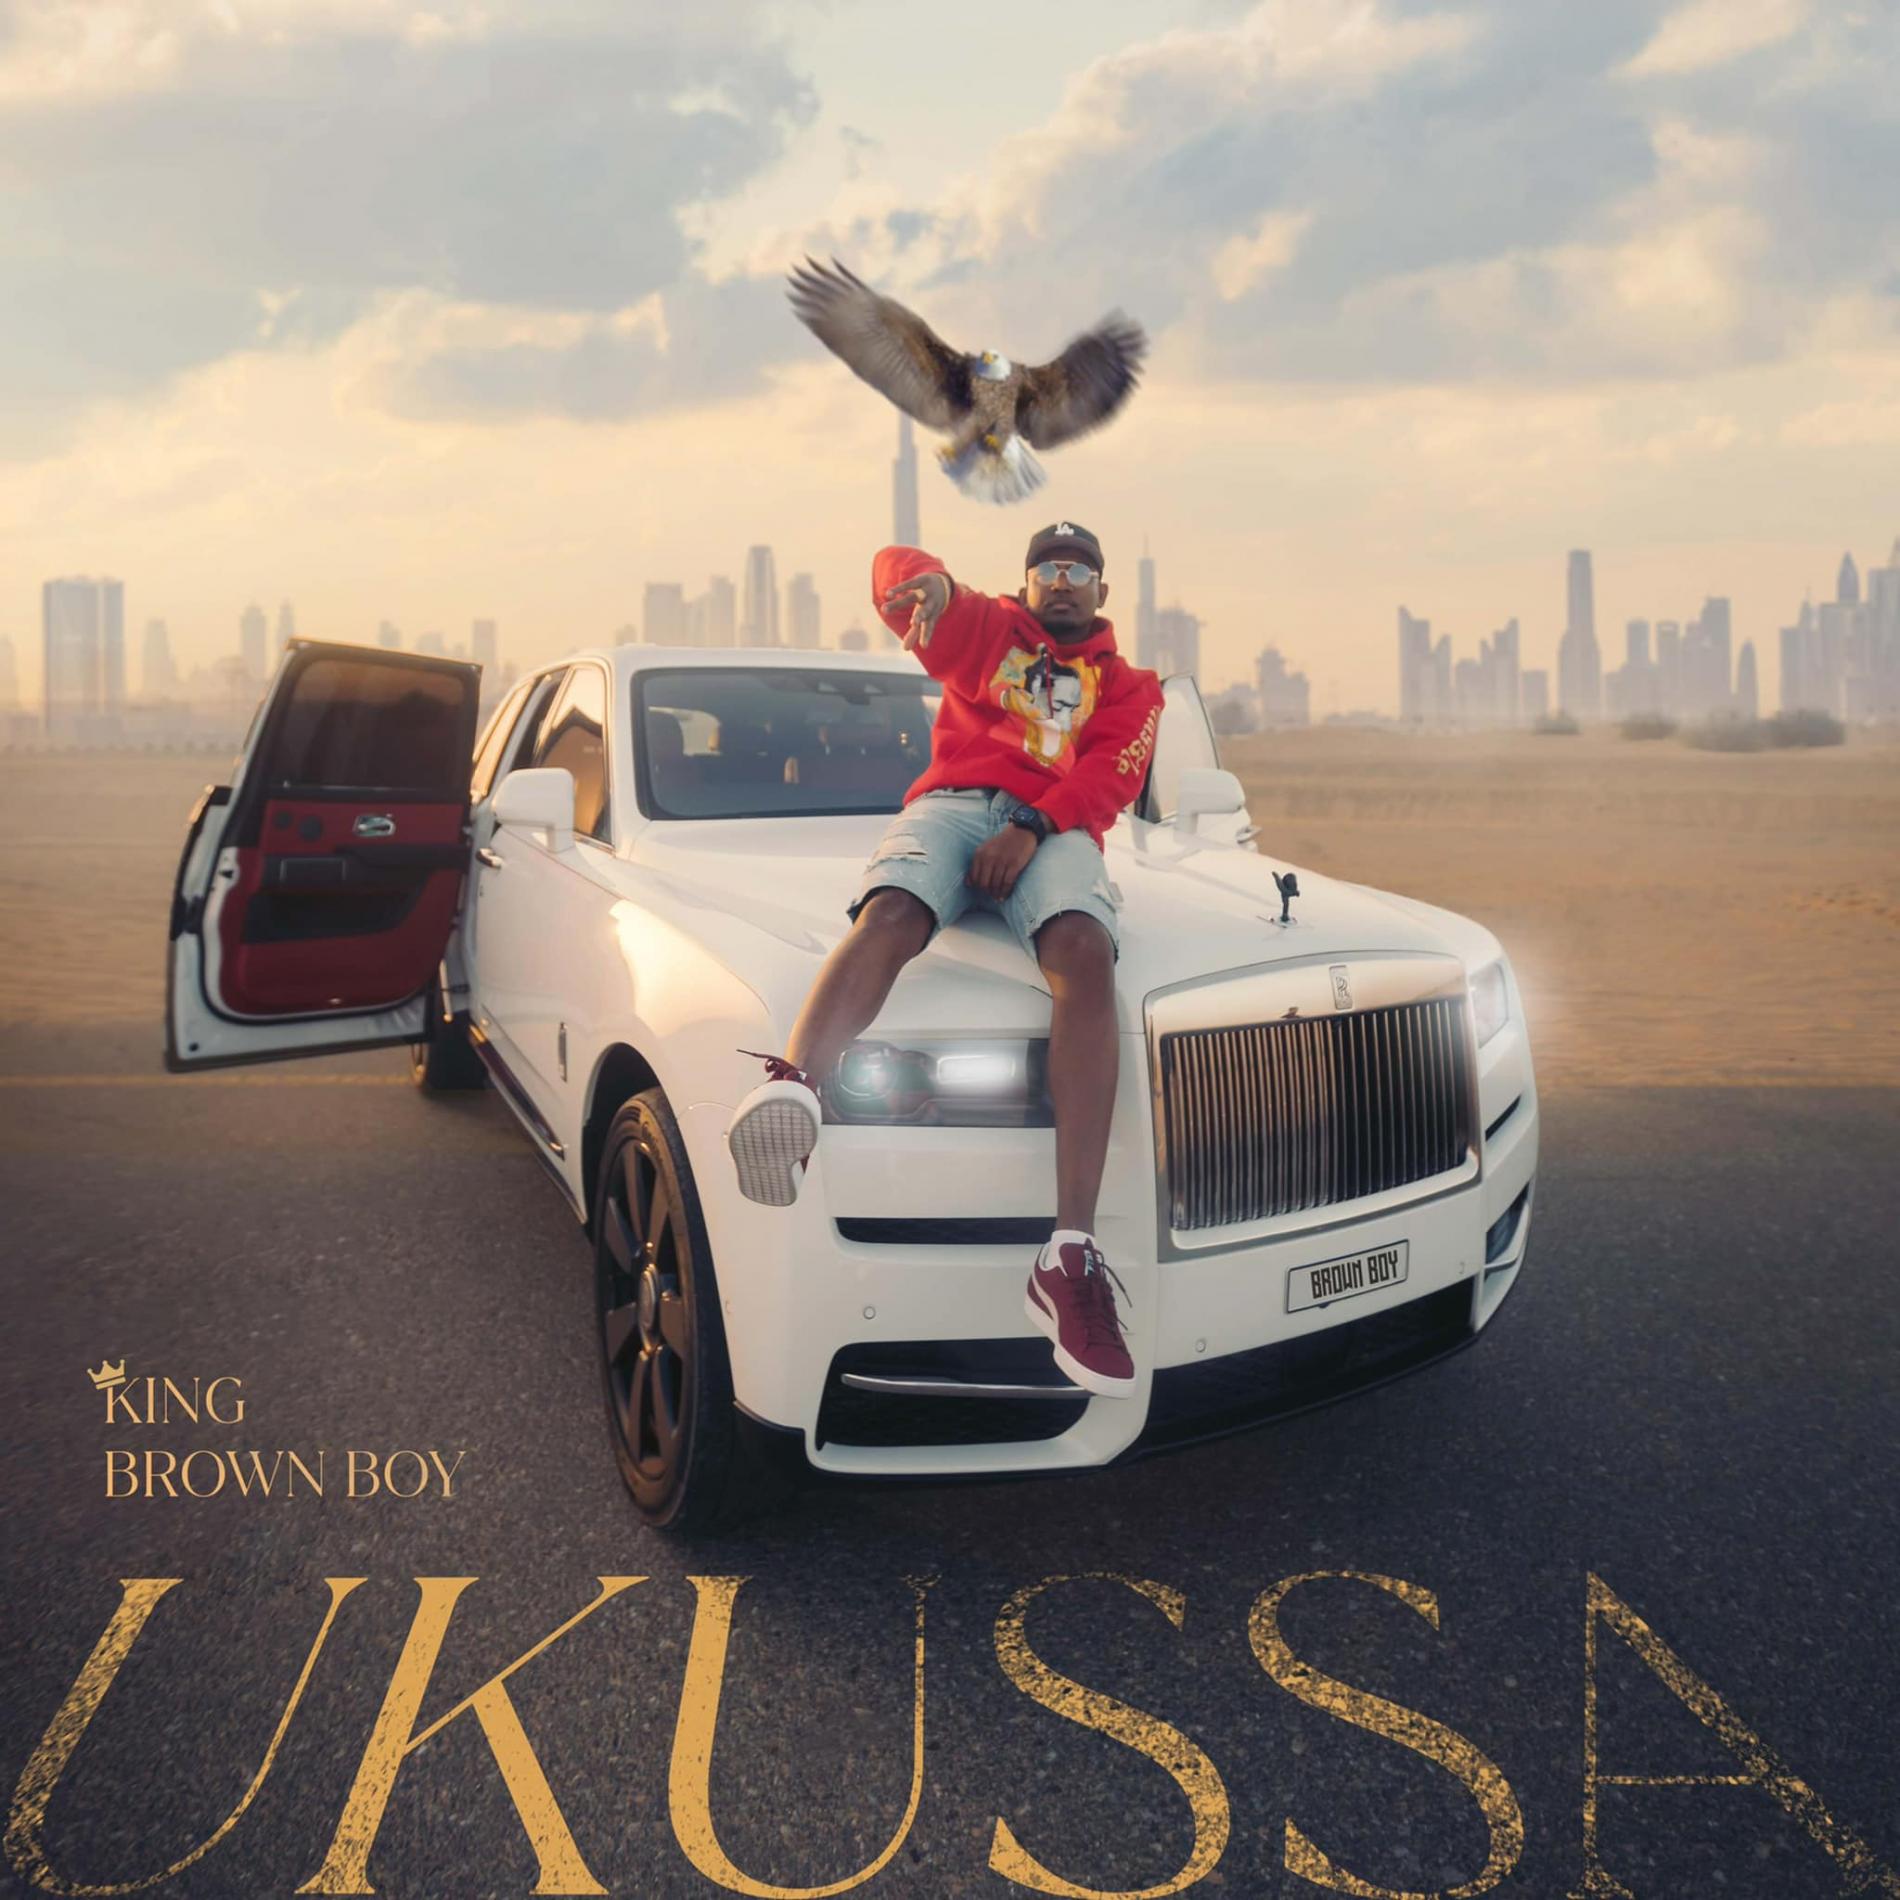 New Music : King Brown Boy – Ukussa